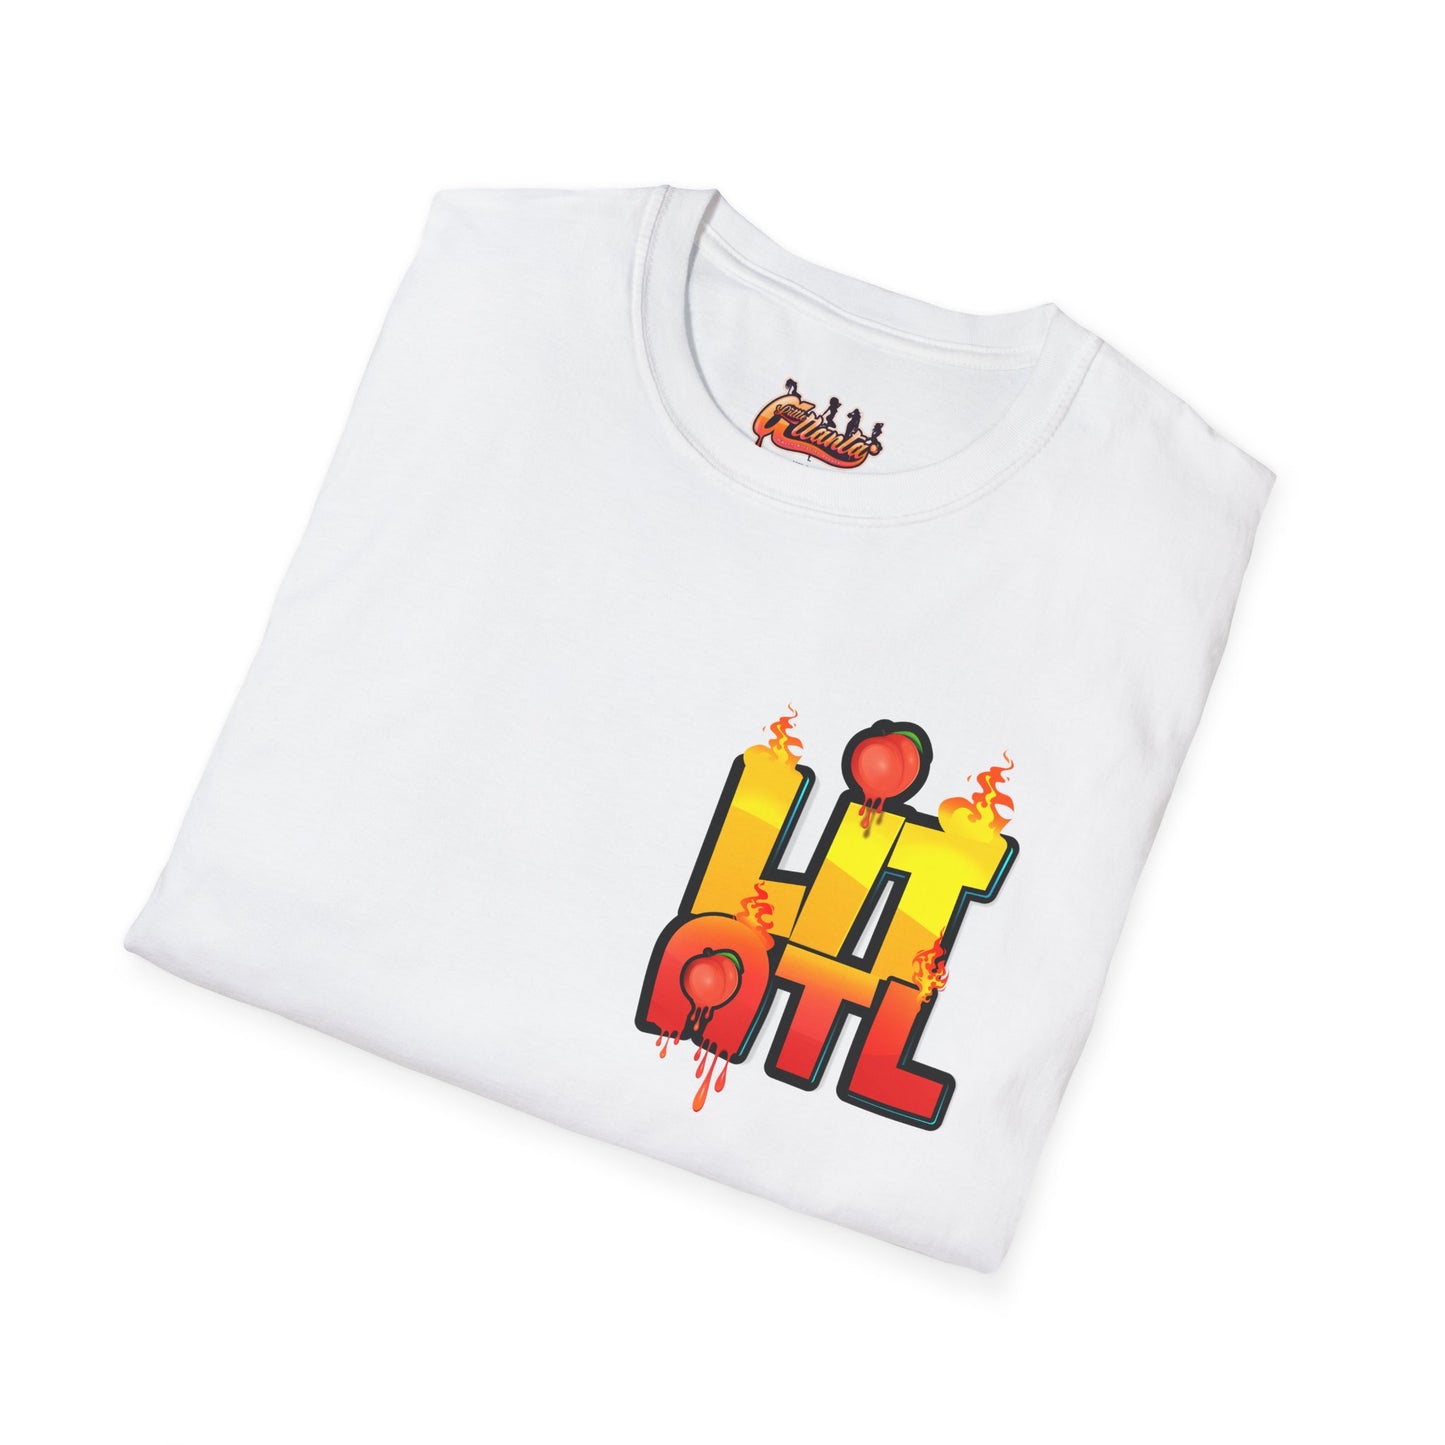 LIT ATL T-Shirt